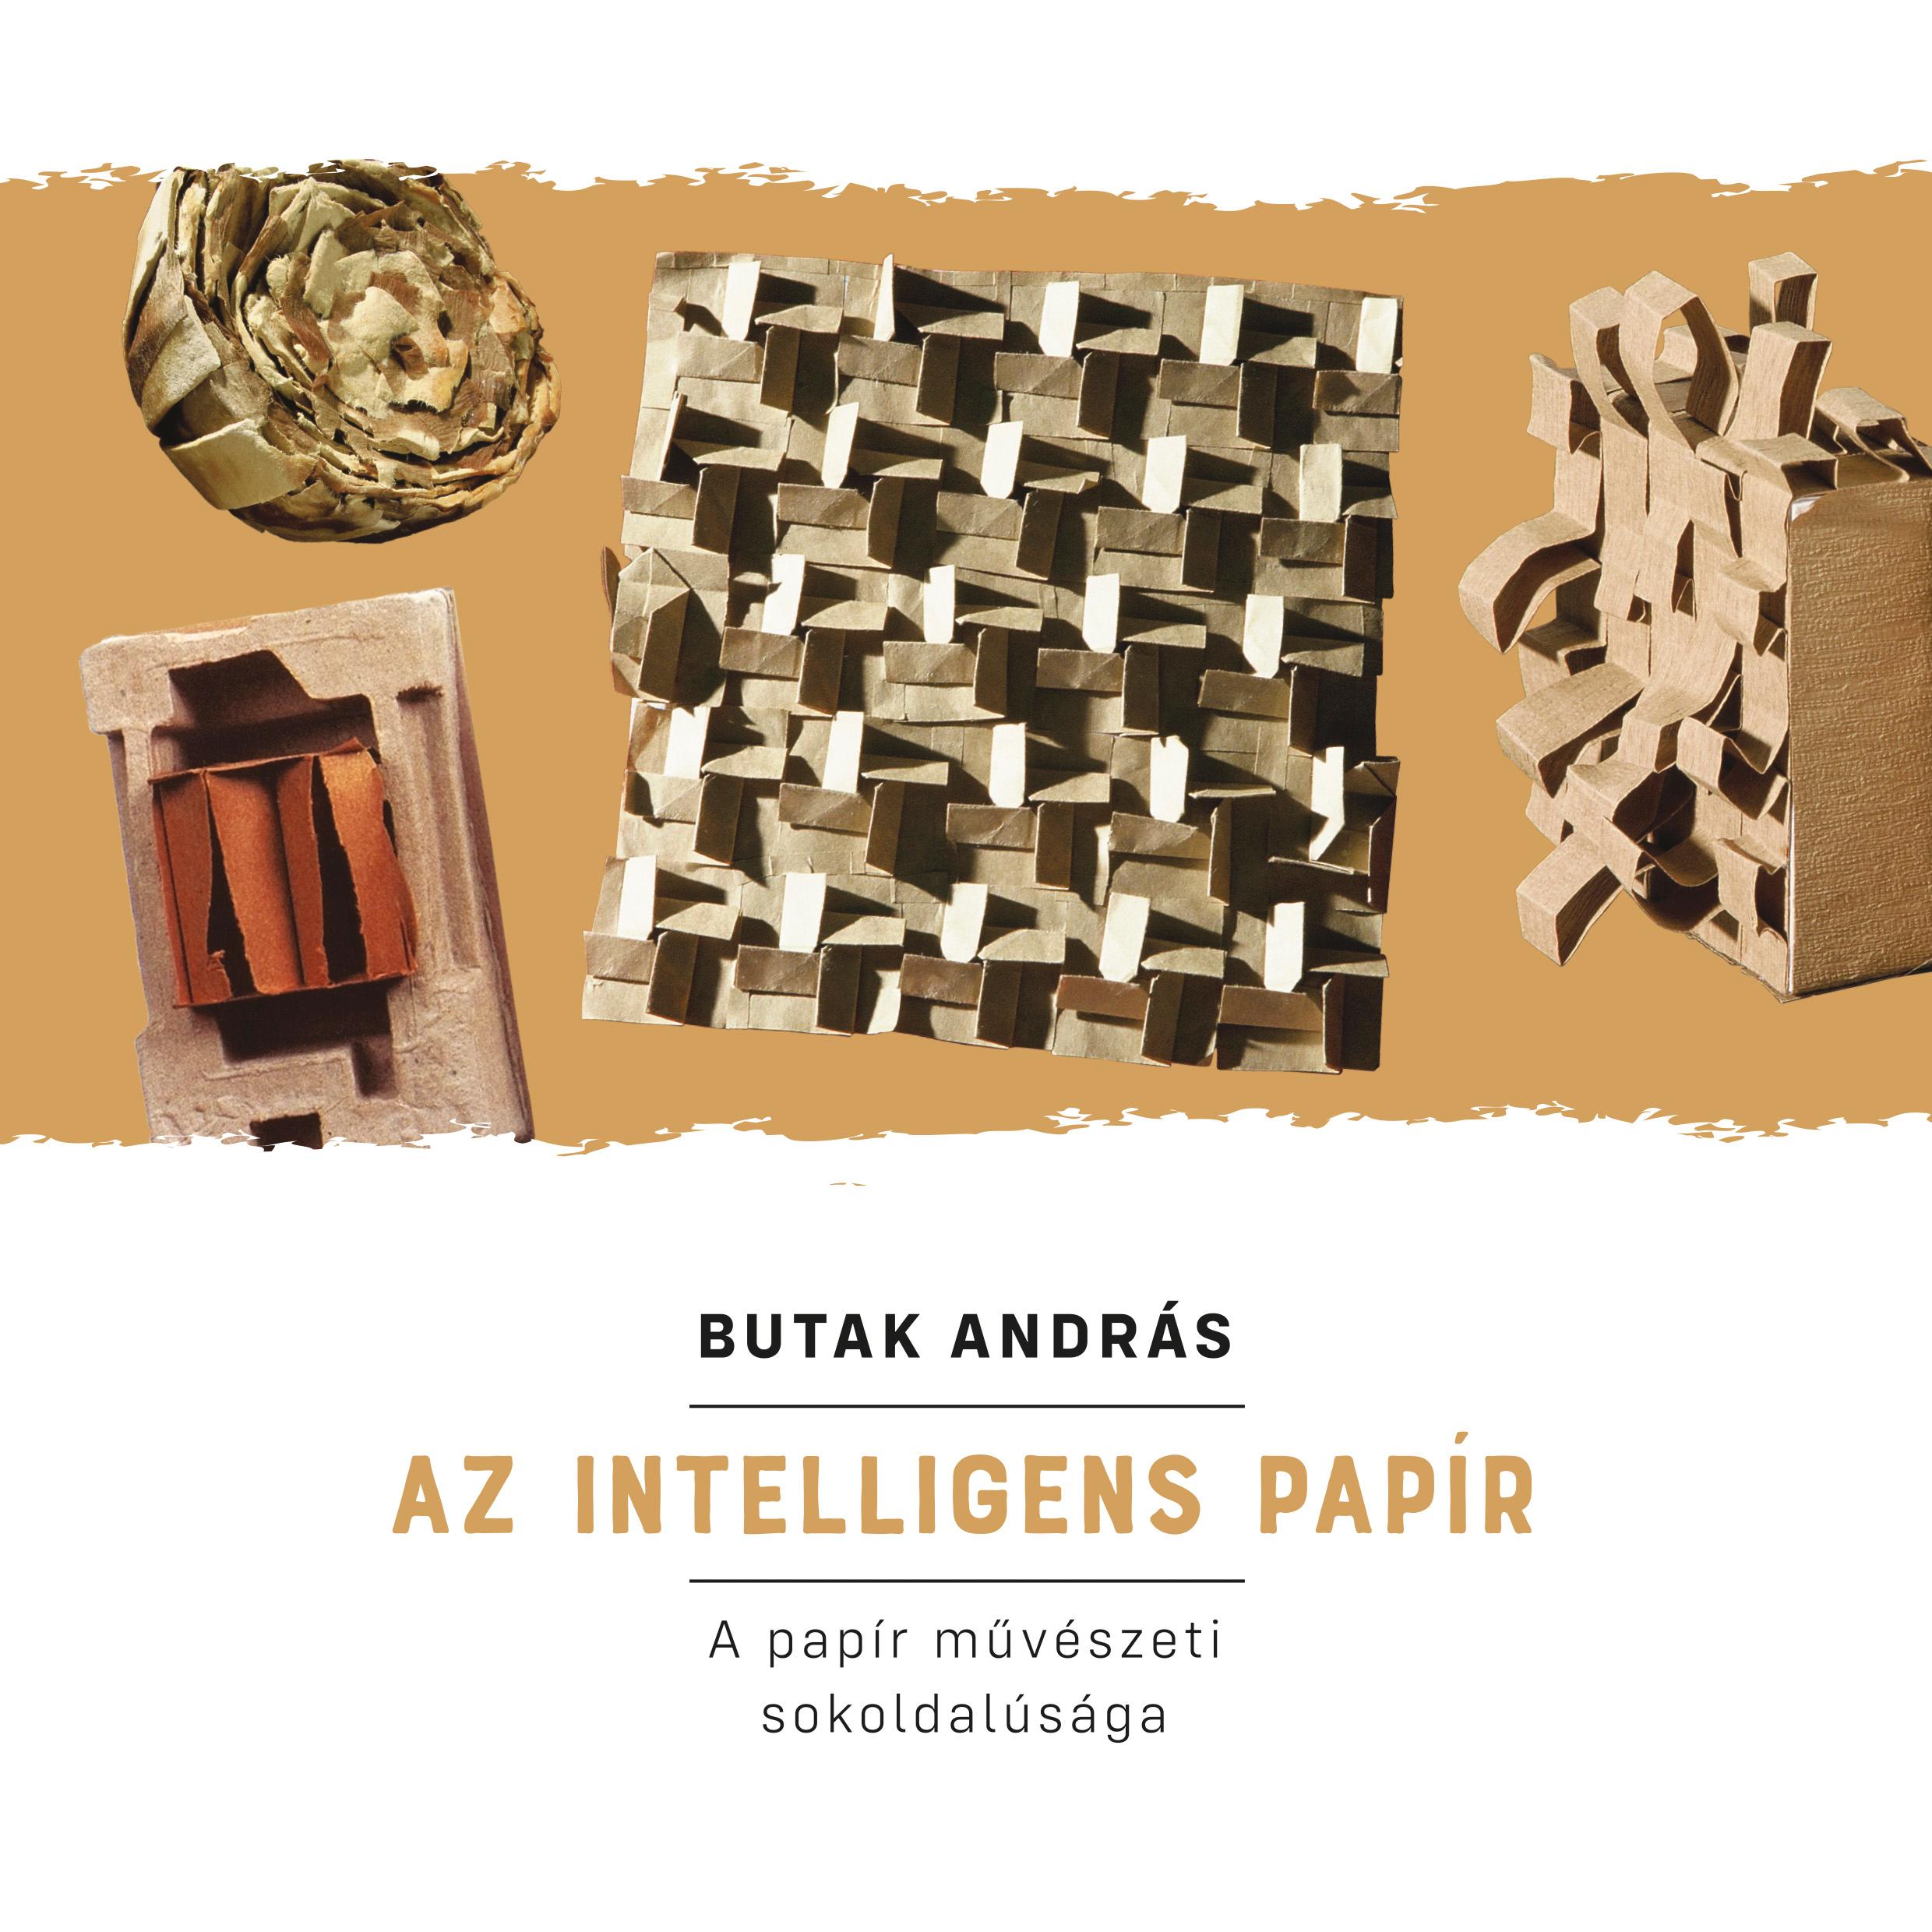 BUTAK ANDRÁS - Az intelligens papír (A papír művészeti sokoldalúsága)